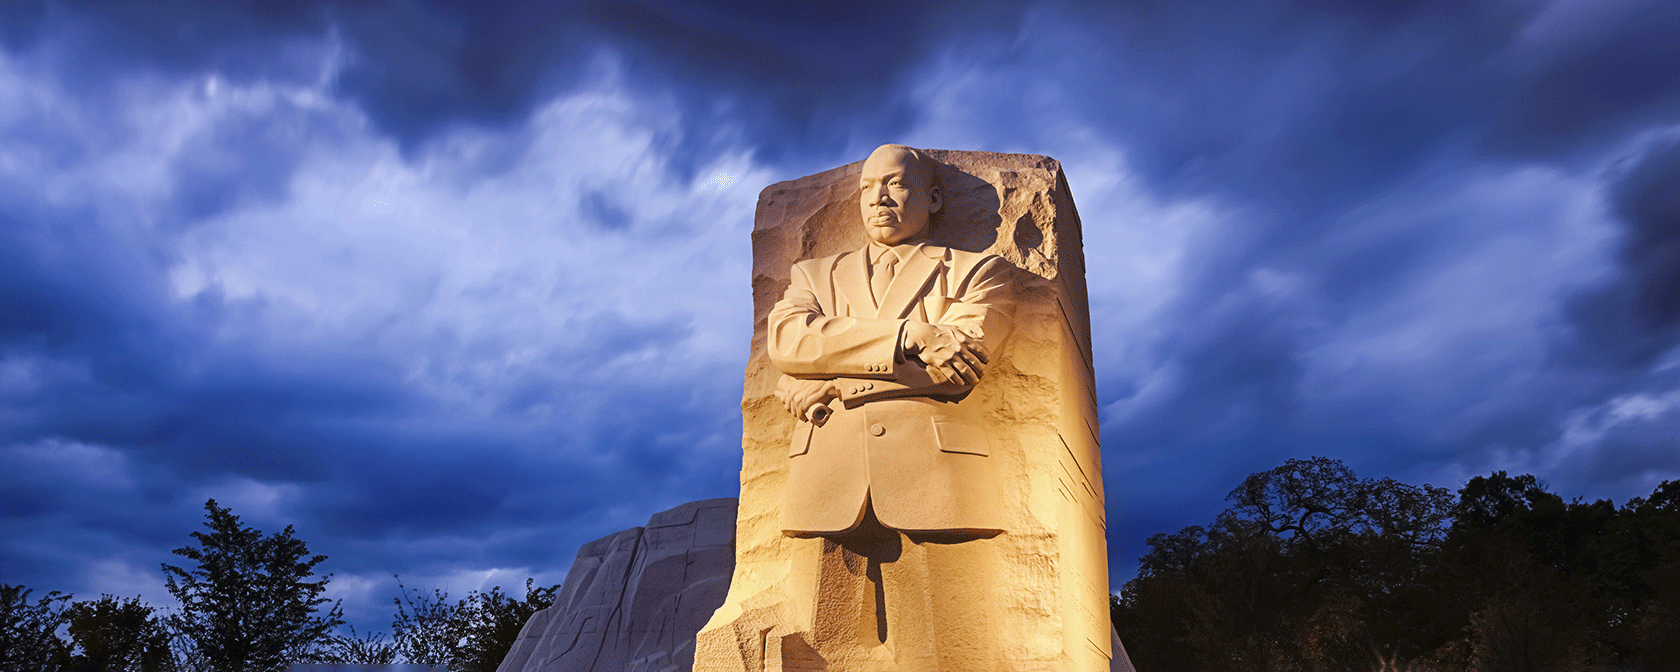 Martin Luther King Jr. Memorial bei Nacht